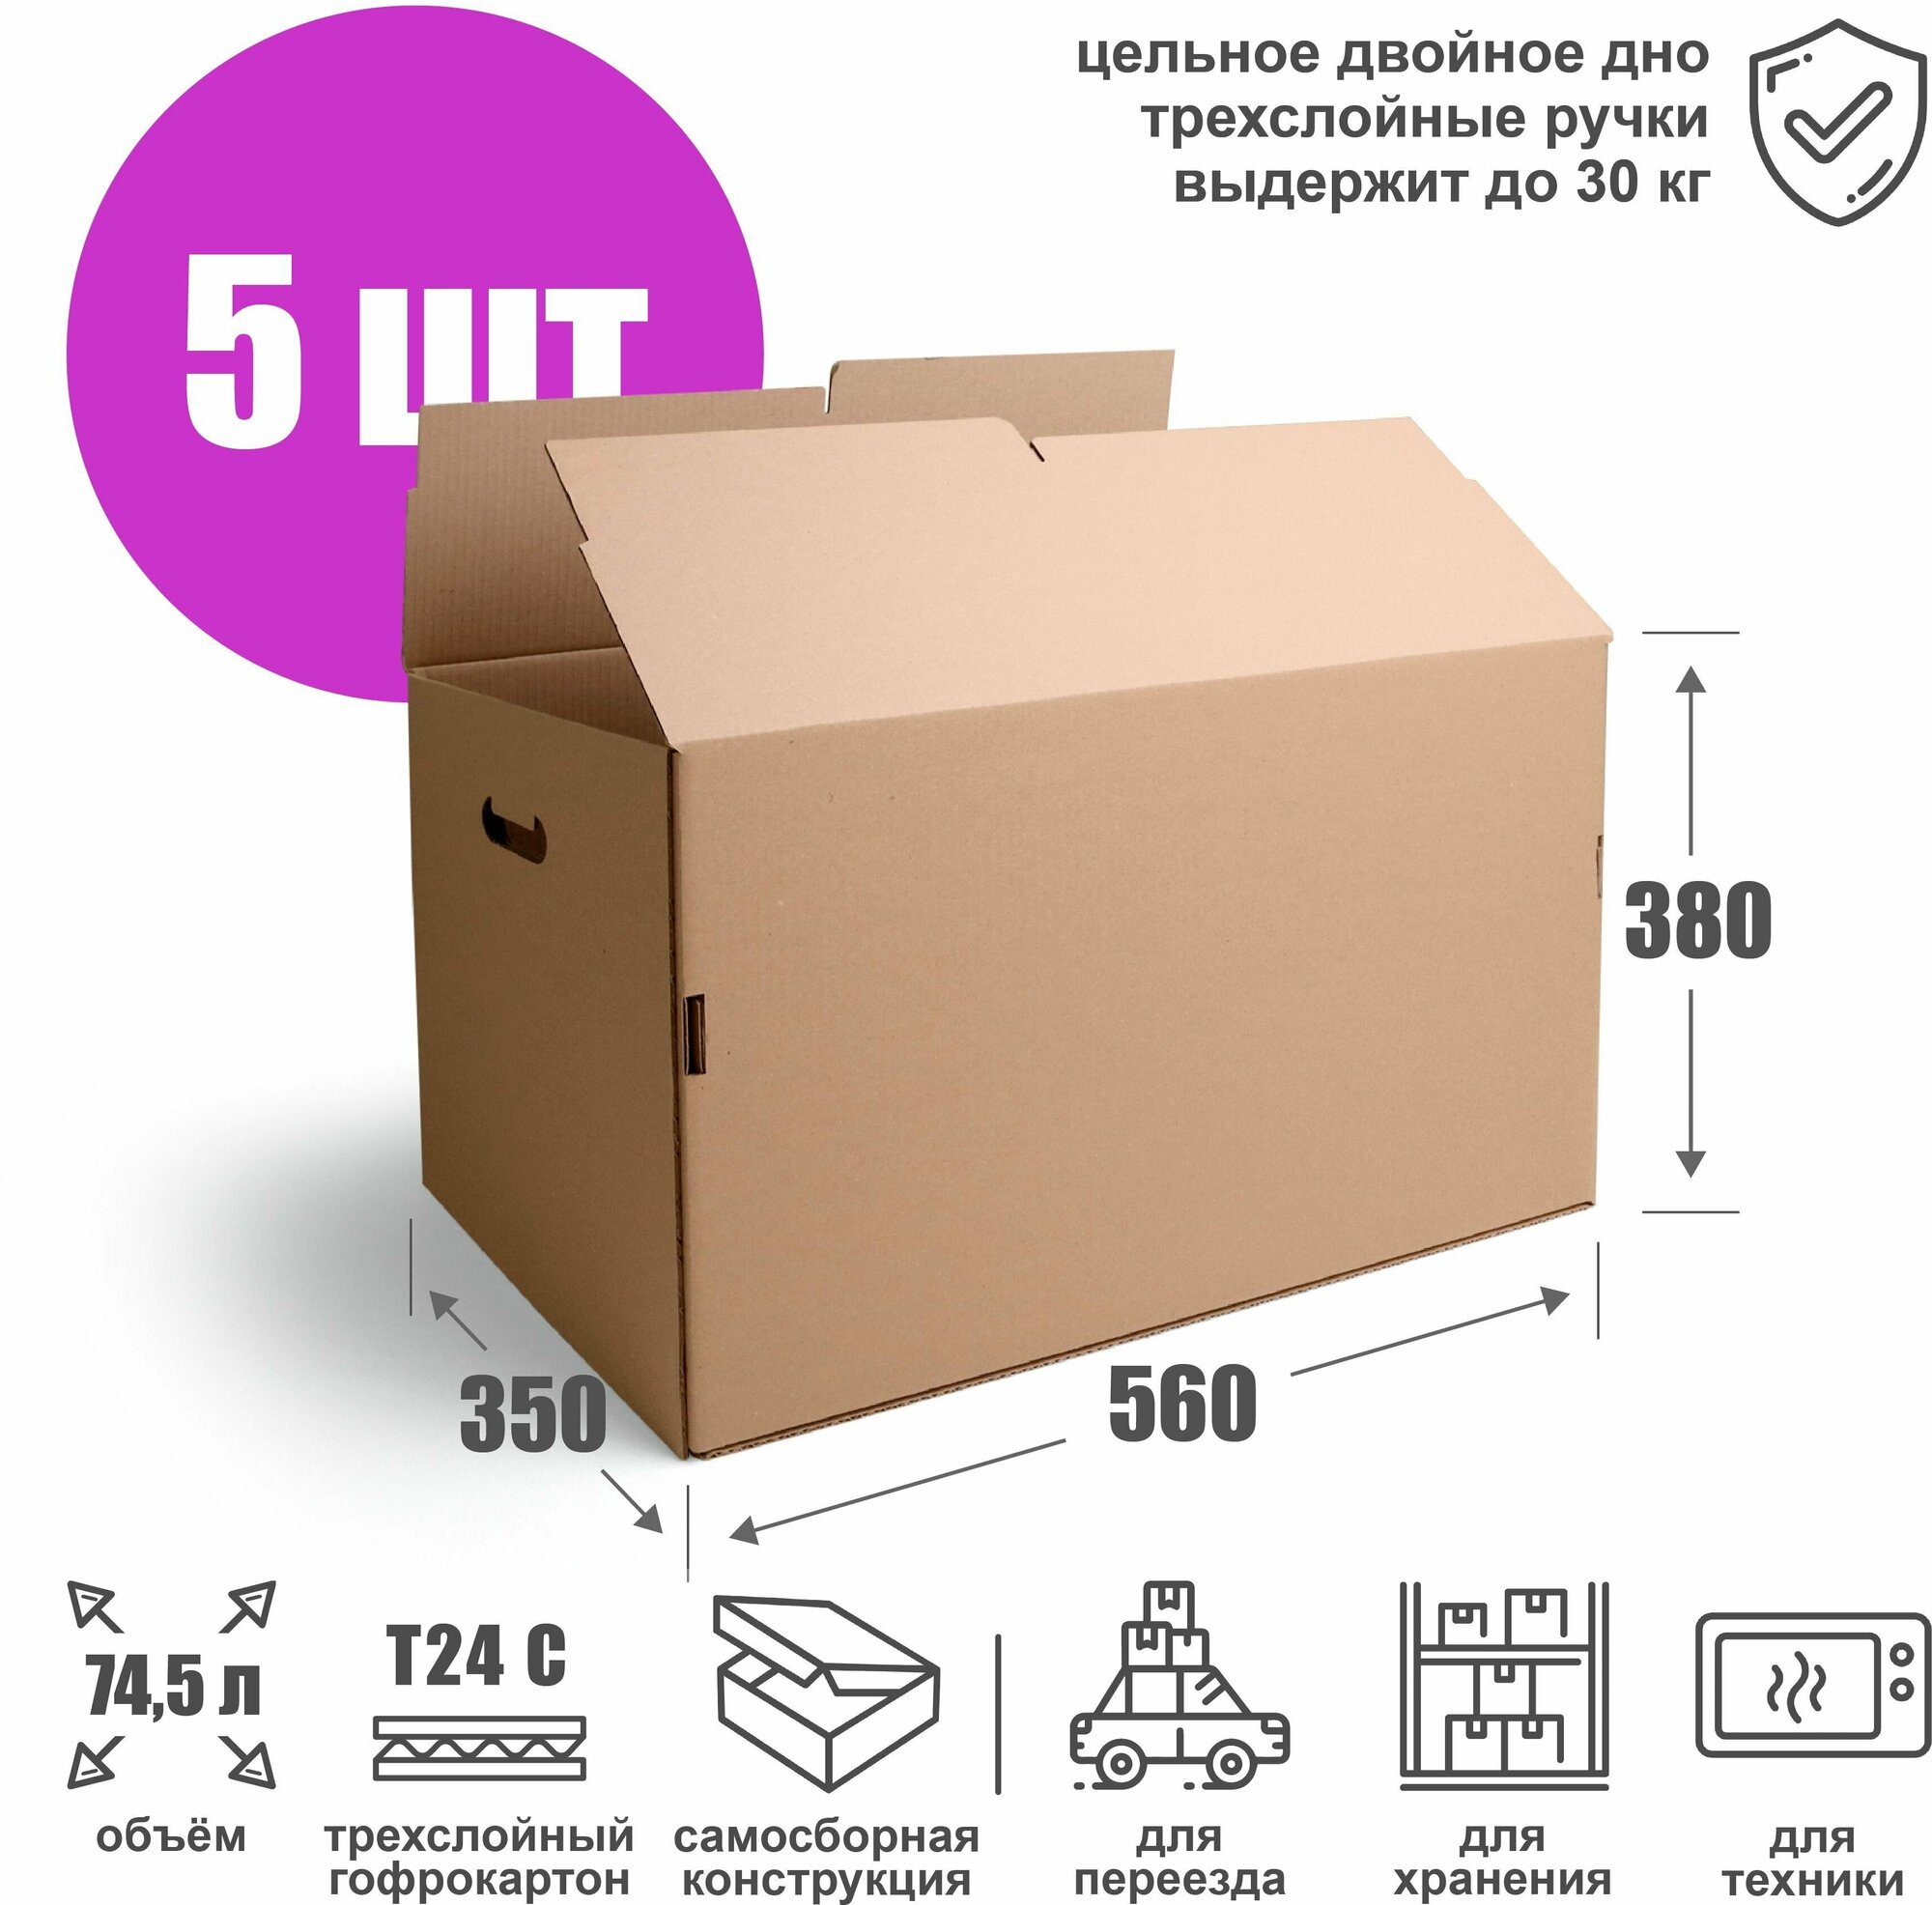 Картонная коробка для хранения и переезда 56х35х38 см (Т24 С) - 5 шт. Усиленная самосборная коробка из гофрокартона 560х350х380 мм объем 745 л.